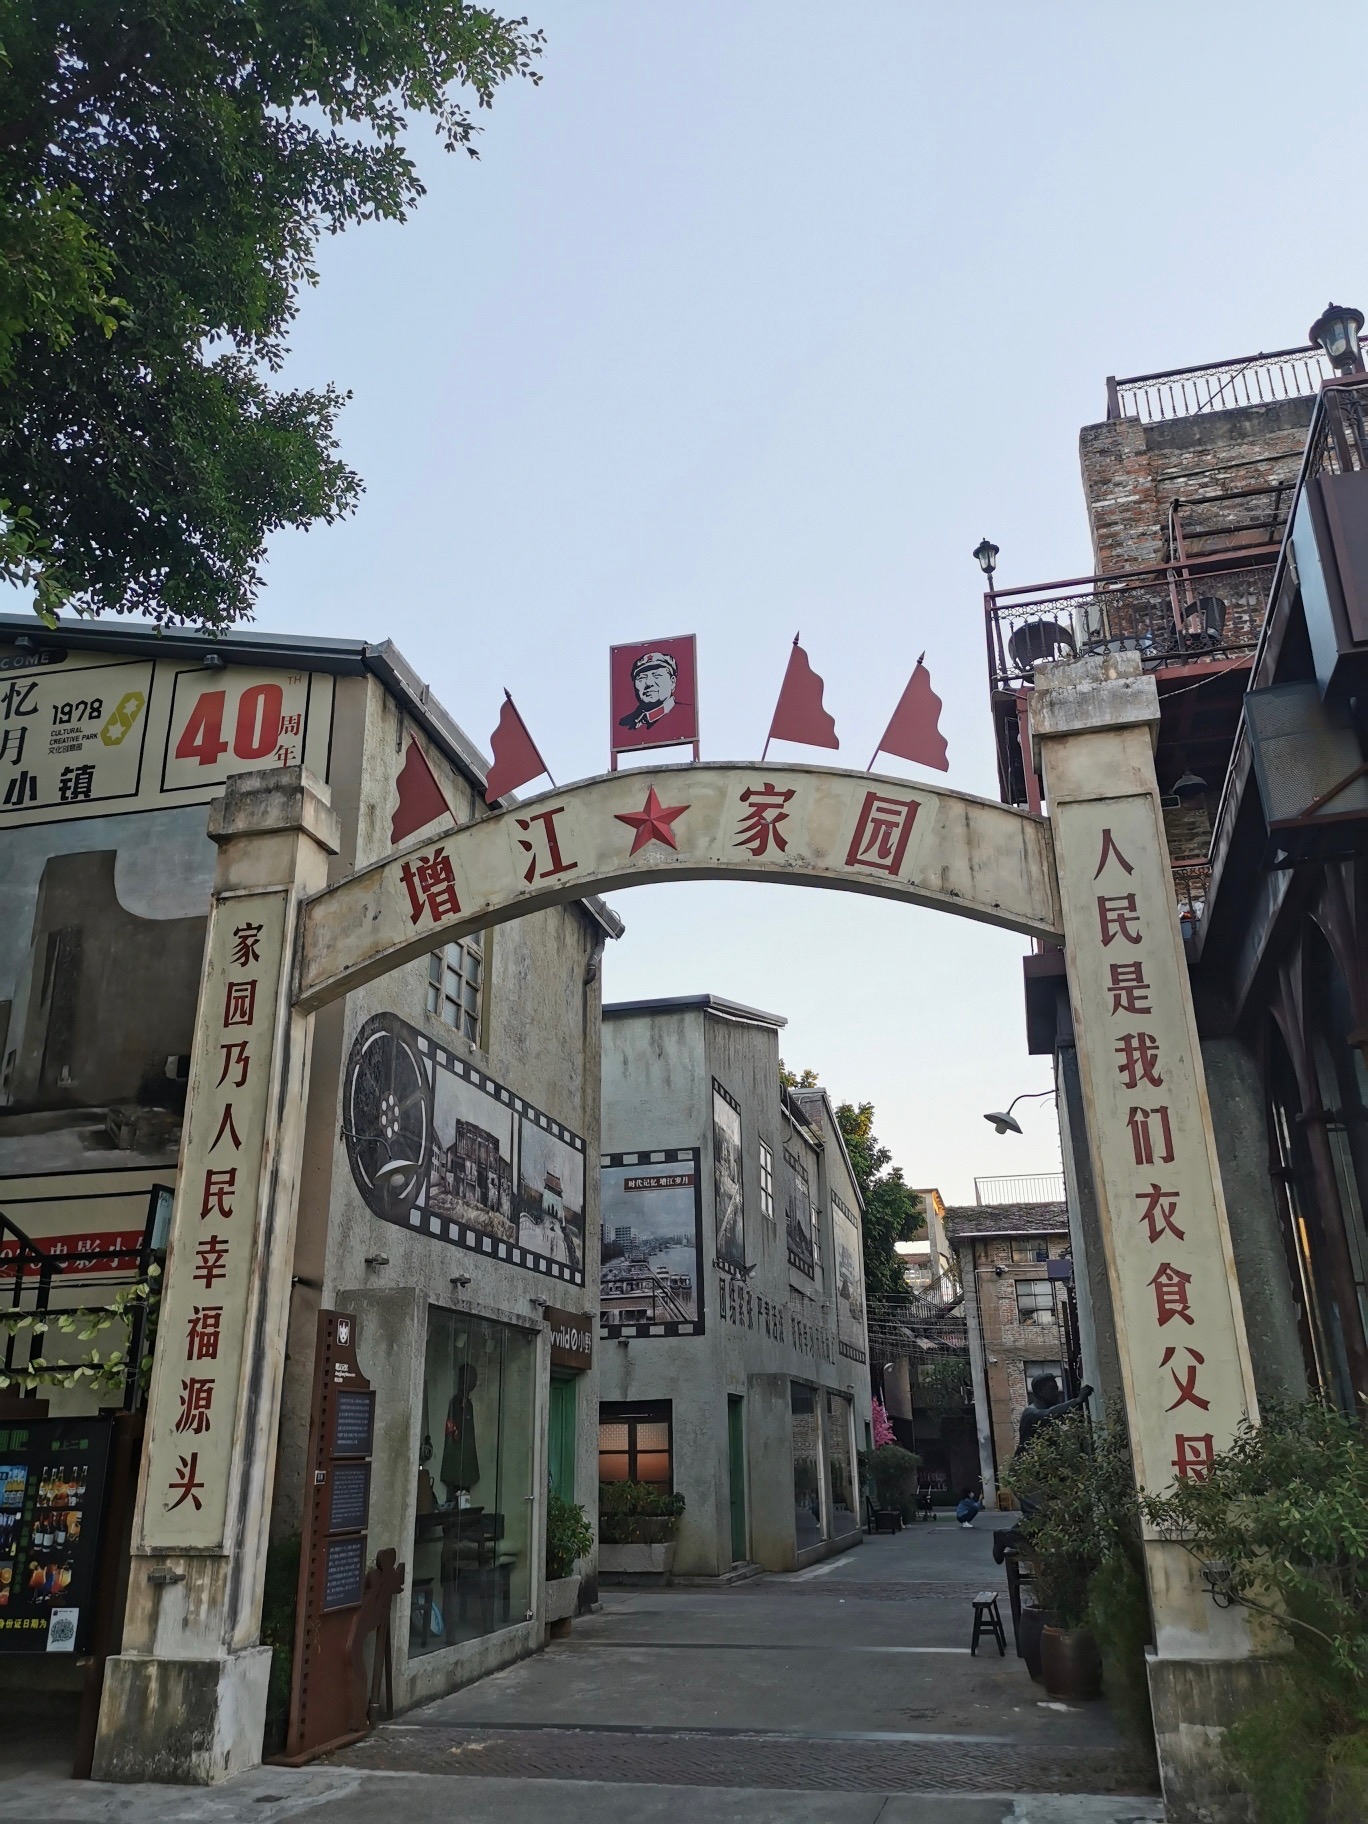 1978是我出生那一年，这个1978电影小镇位于广州市增城区增江东岸，项目前身是增城糖纸厂，通过对旧